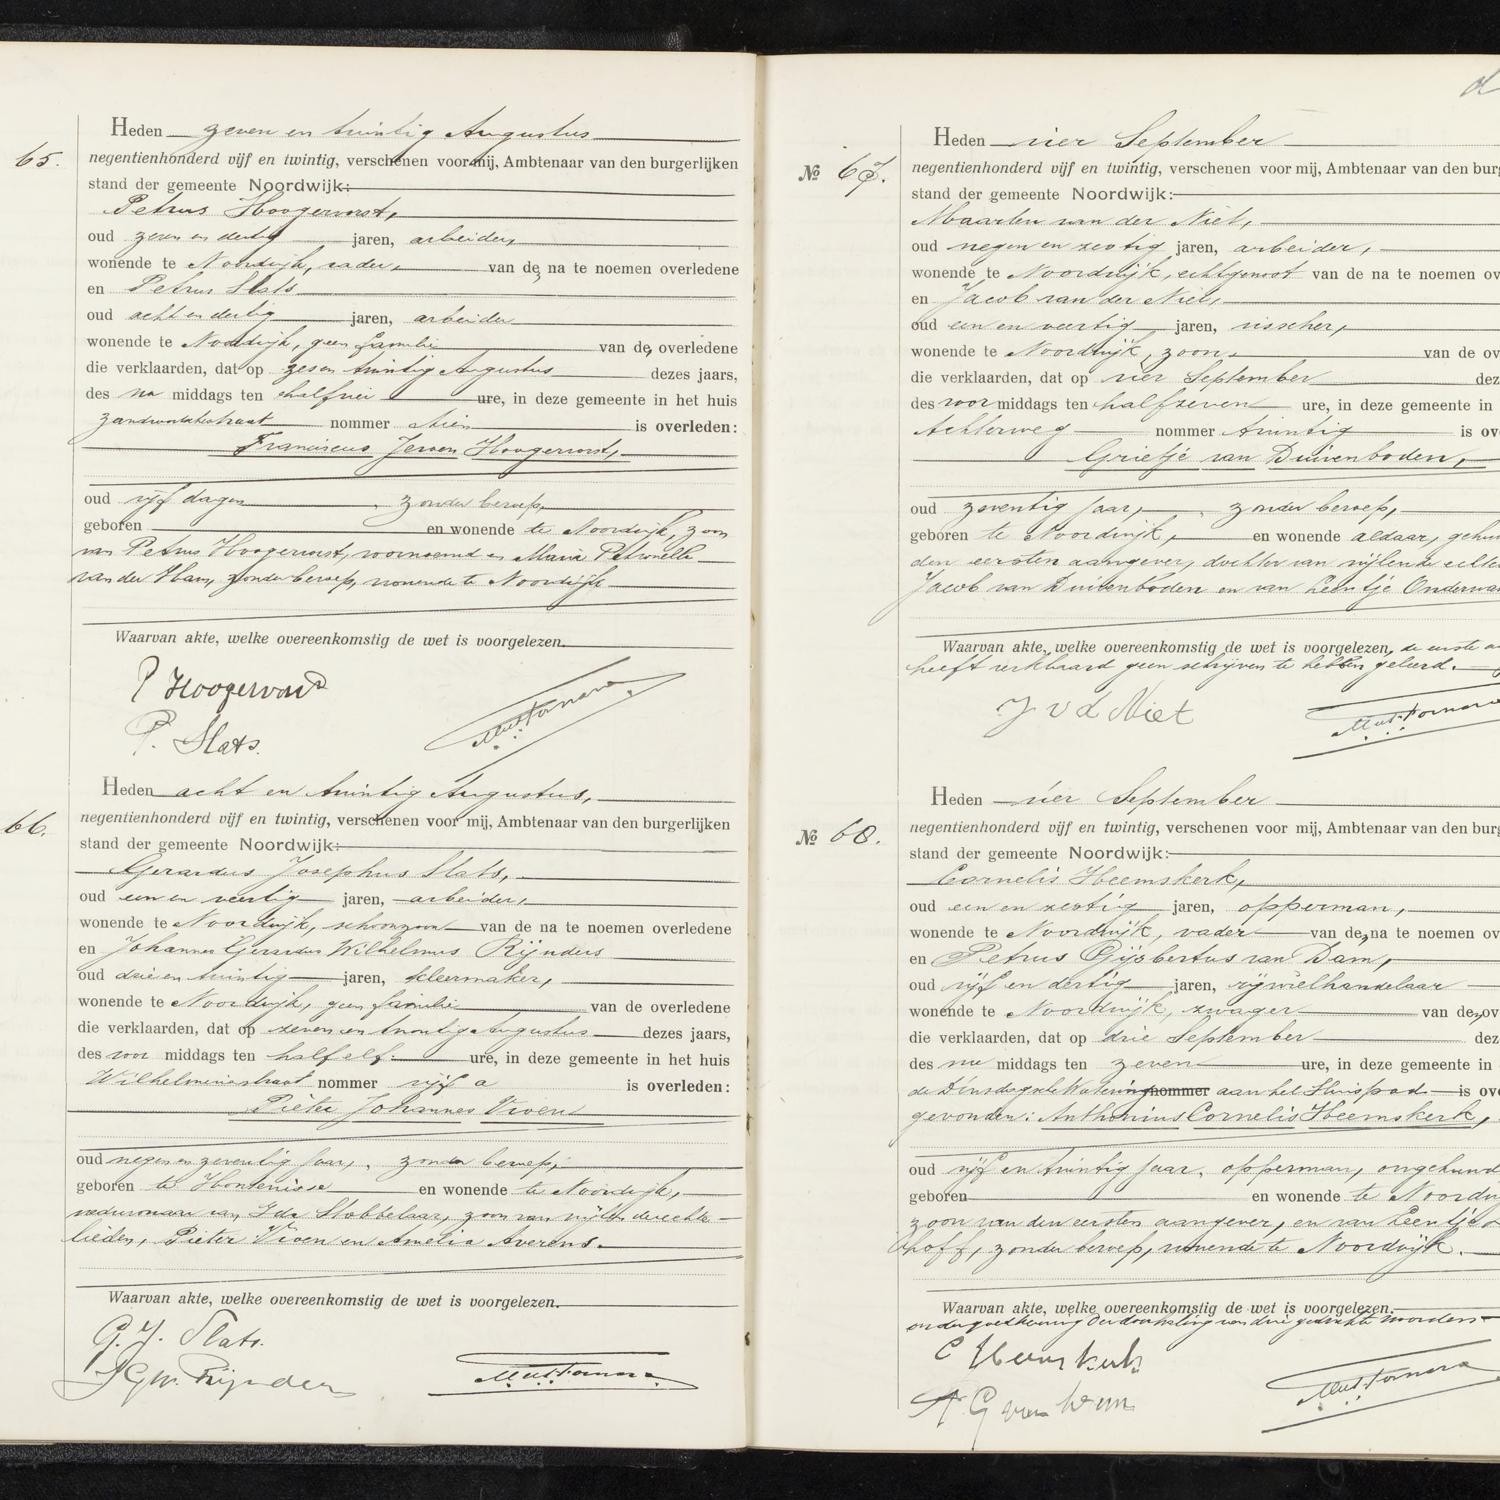 Civil registry of deaths, Noordwijk, 1925, records 65-68